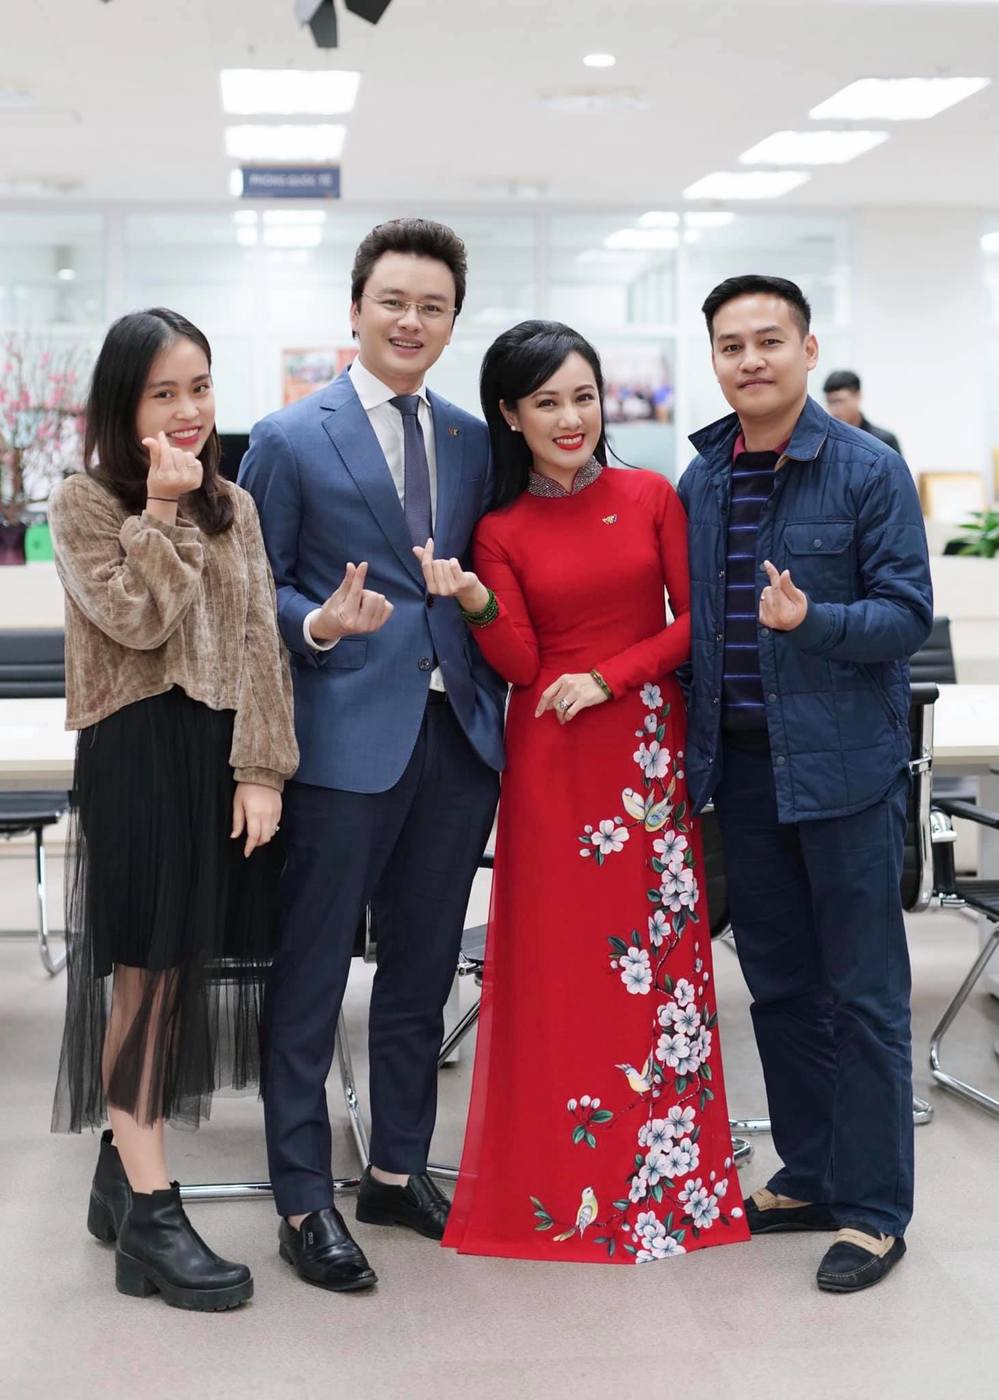  
Nữ BTV tài hoa và các đồng nghiệp trẻ tại Đài truyền hình Việt Nam. (Ảnh: FB Hoai Anh)